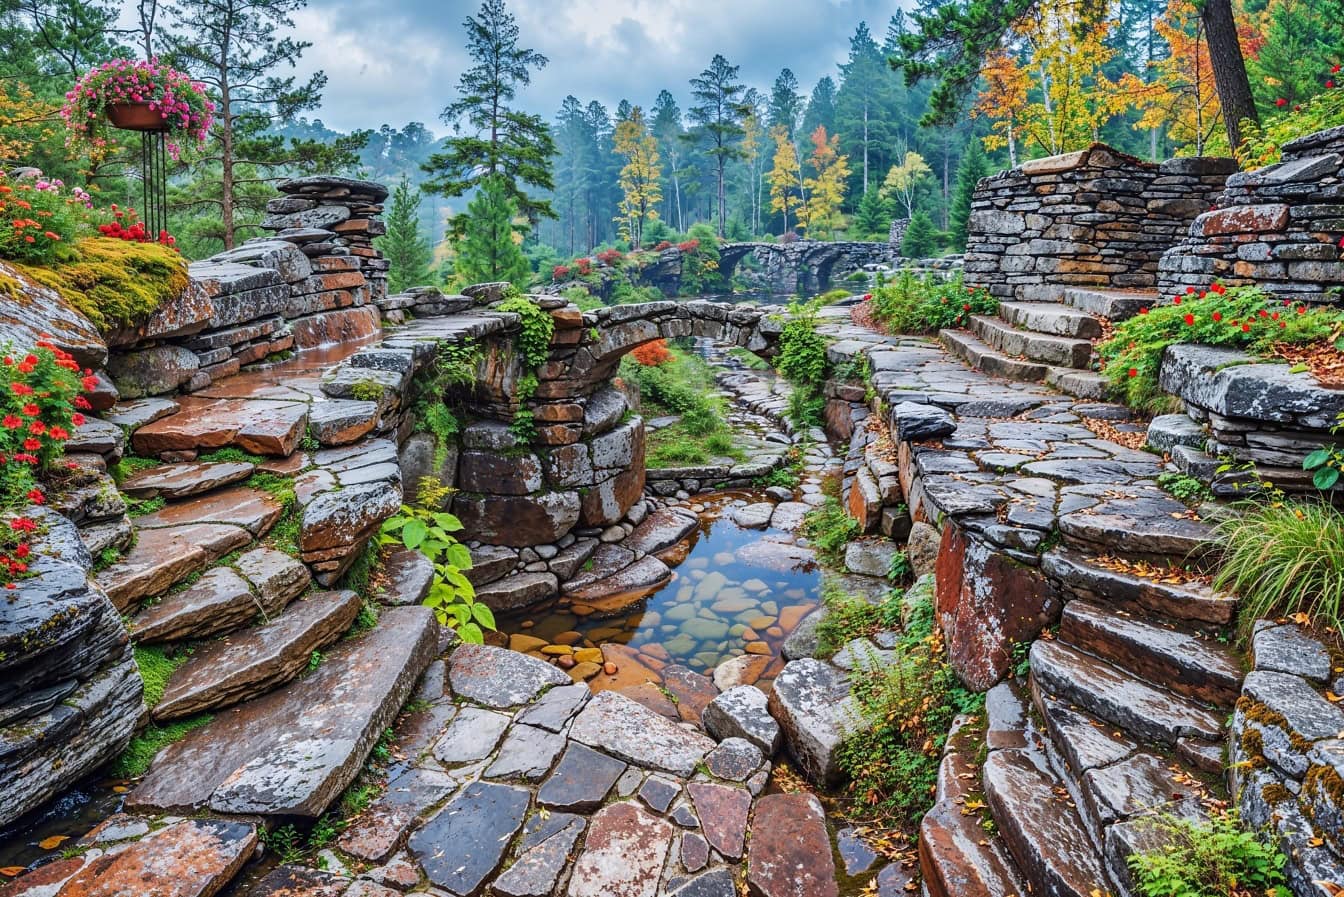 Кам’яний міст в саду всередині природного парку в горах